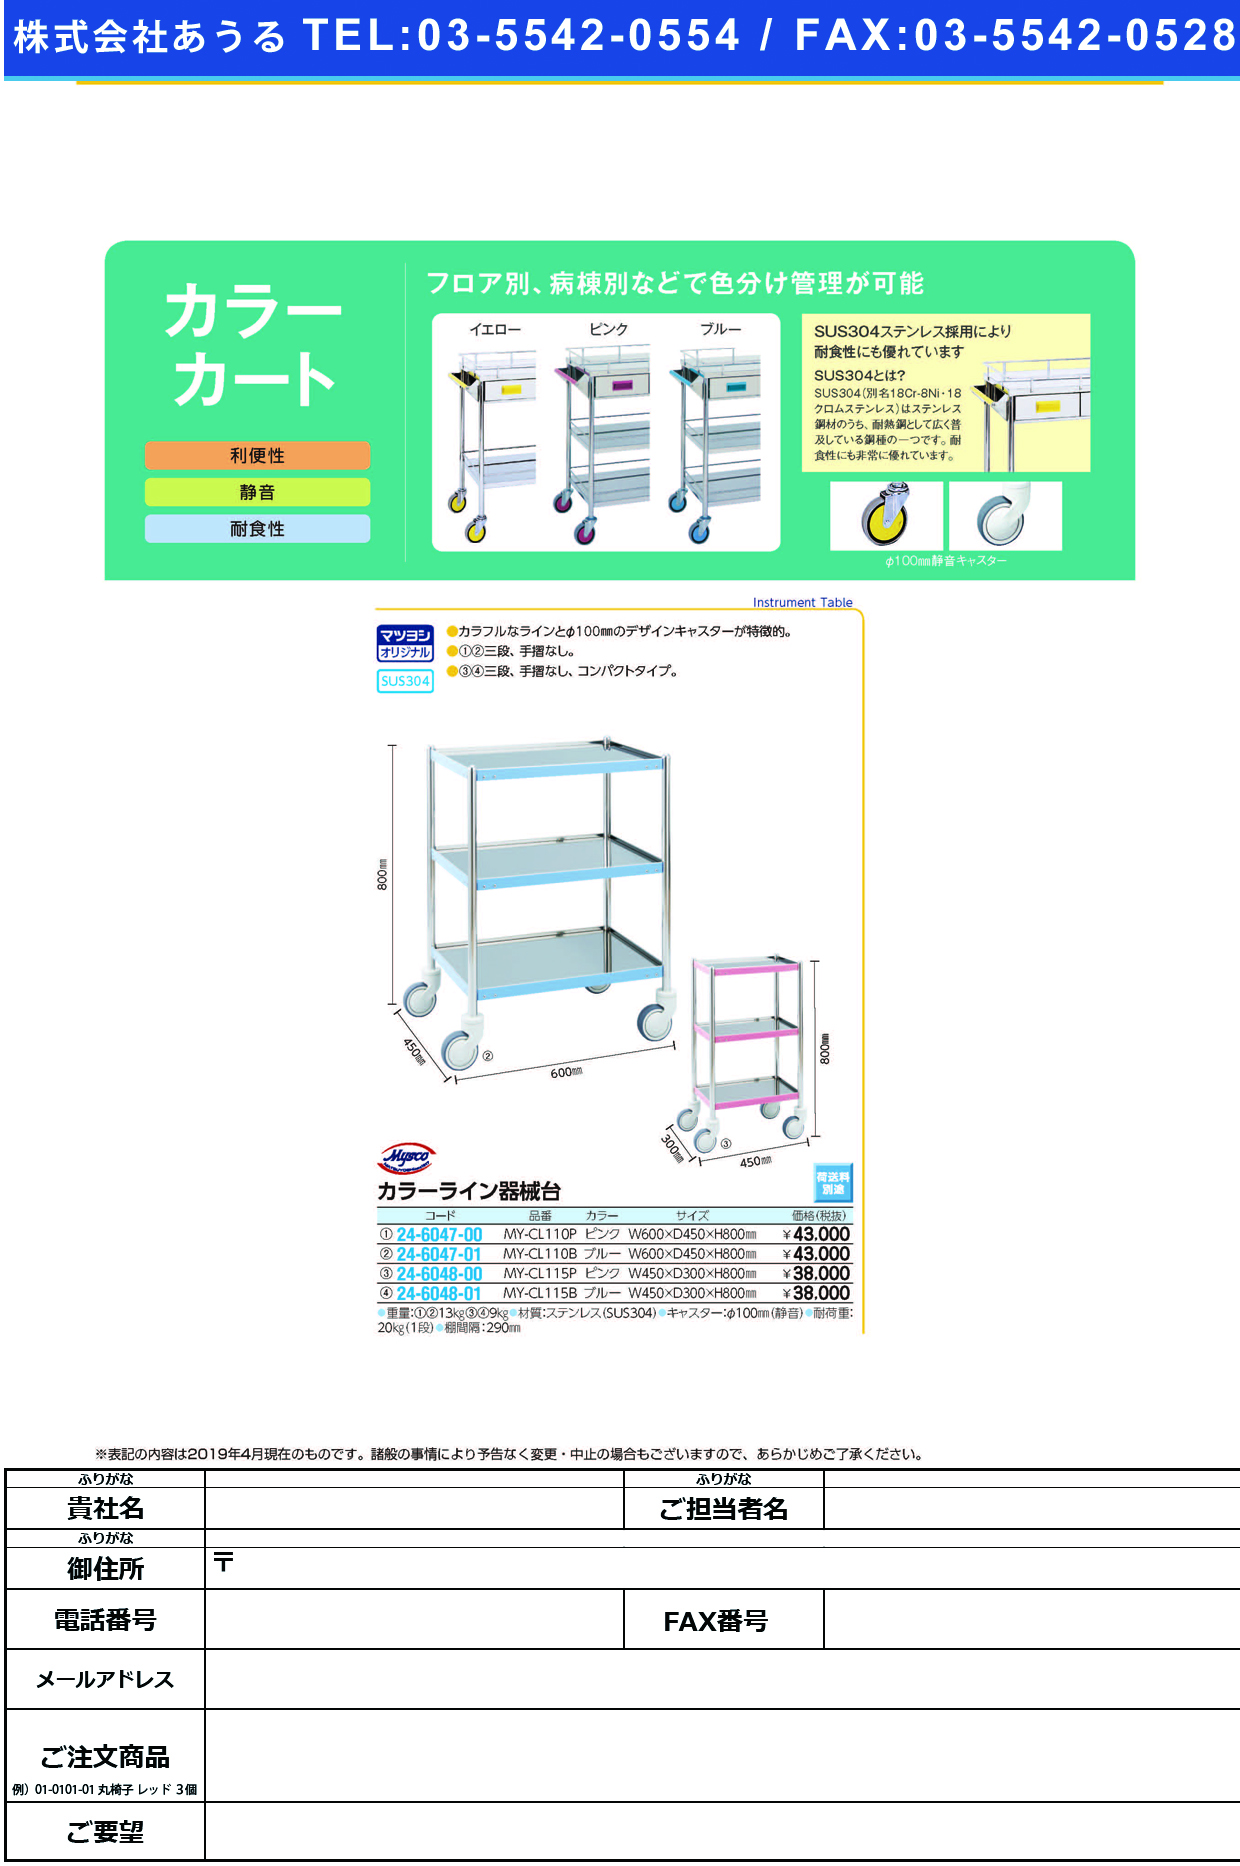 (24-6048-01)カラーライン器械台 MY-CL115B(ﾌﾞﾙｰ) ｶﾗｰﾗｲﾝｷｶｲﾀﾞｲ【1台単位】【2019年カタログ商品】